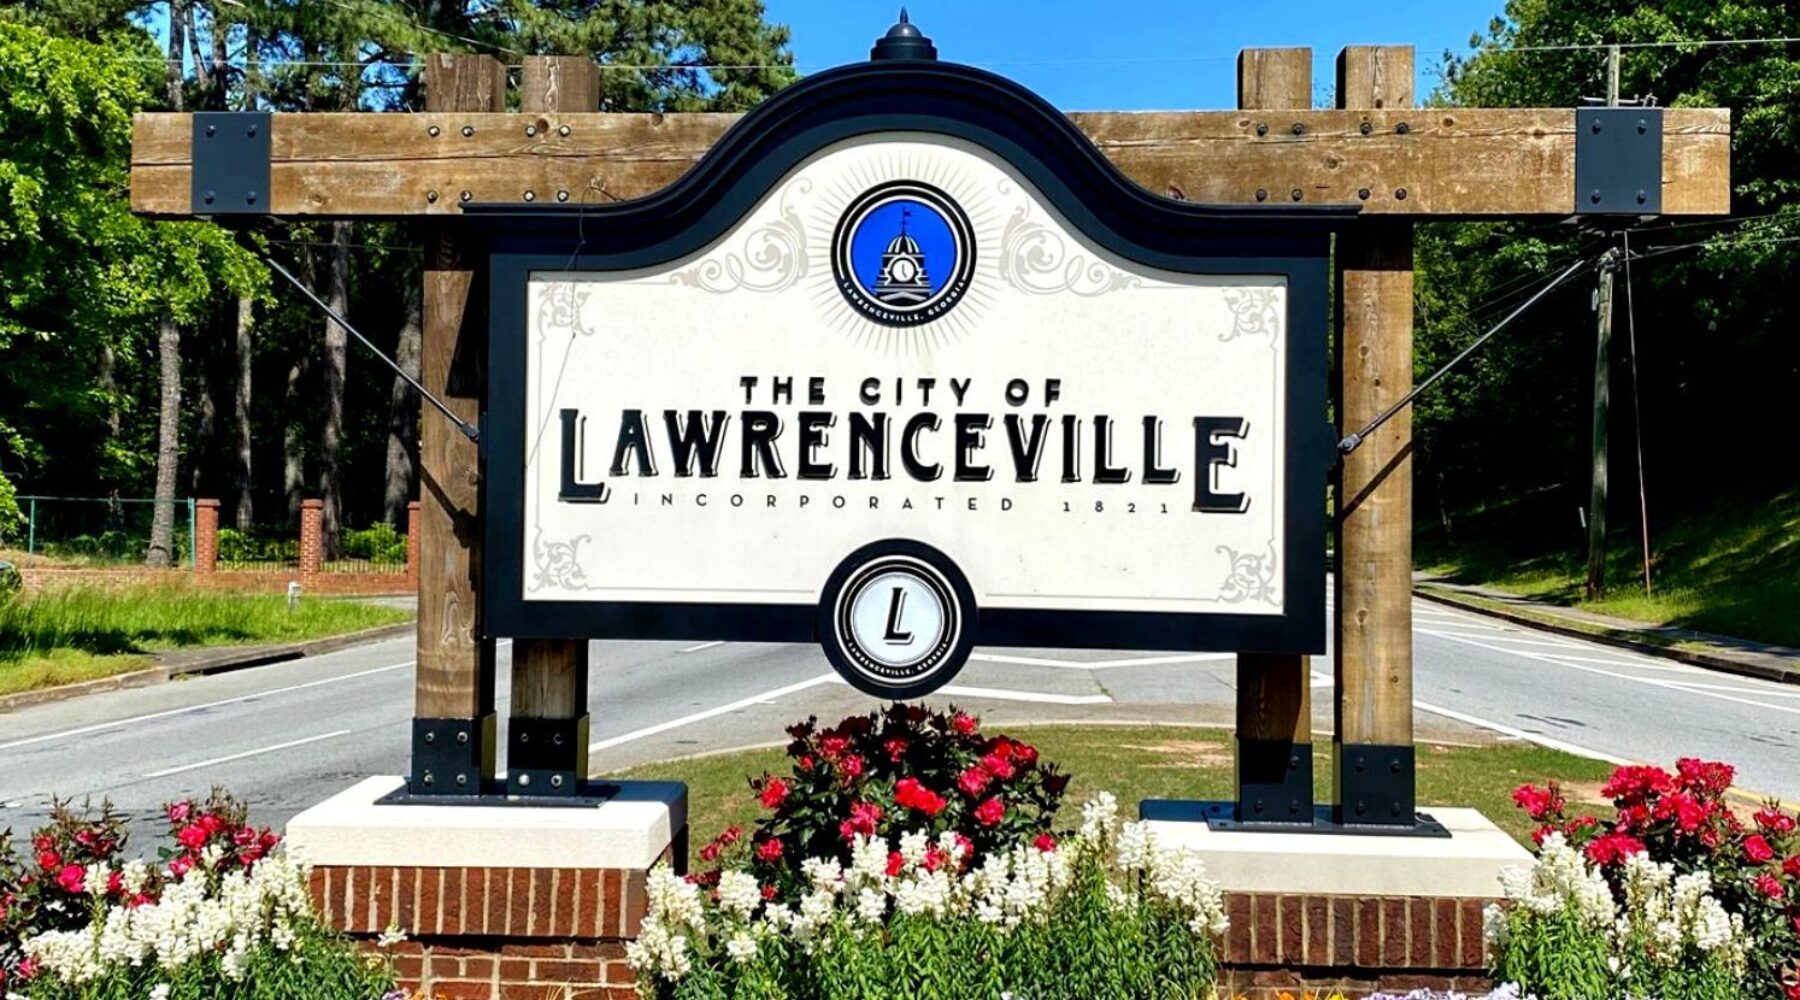 lawrenceville ga sign